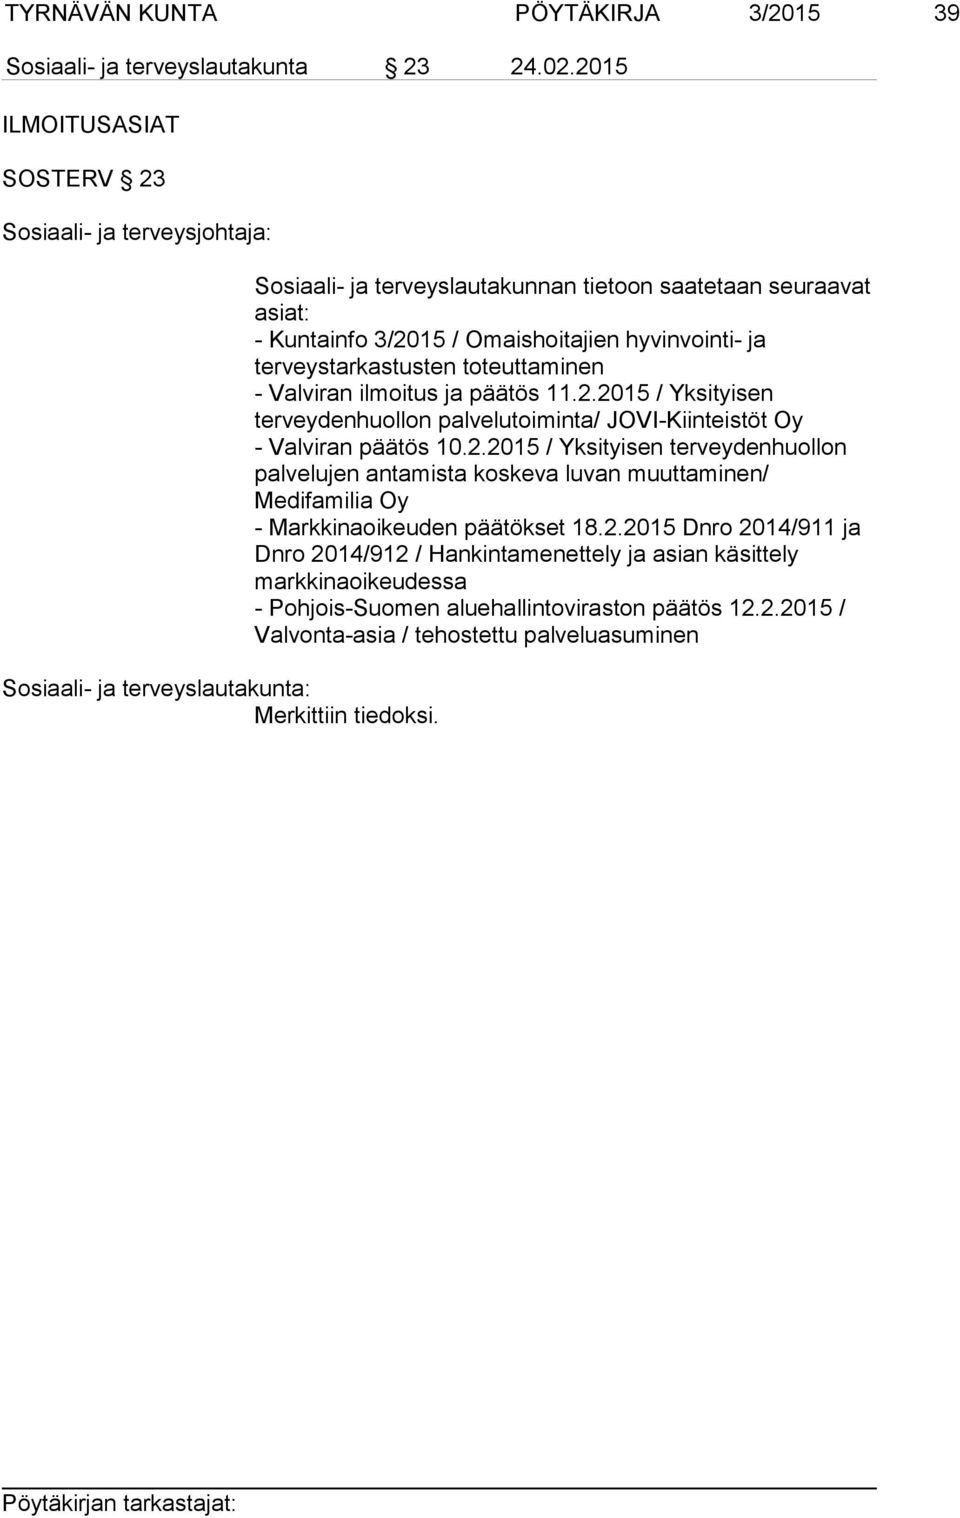 2.2015 / Yksityisen terveydenhuollon palvelujen antamista koskeva luvan muuttaminen/ Medifamilia Oy - Markkinaoikeuden päätökset 18.2.2015 Dnro 2014/911 ja Dnro 2014/912 / Hankintamenettely ja asian käsittely markkinaoikeudessa - Pohjois-Suomen aluehallintoviraston päätös 12.